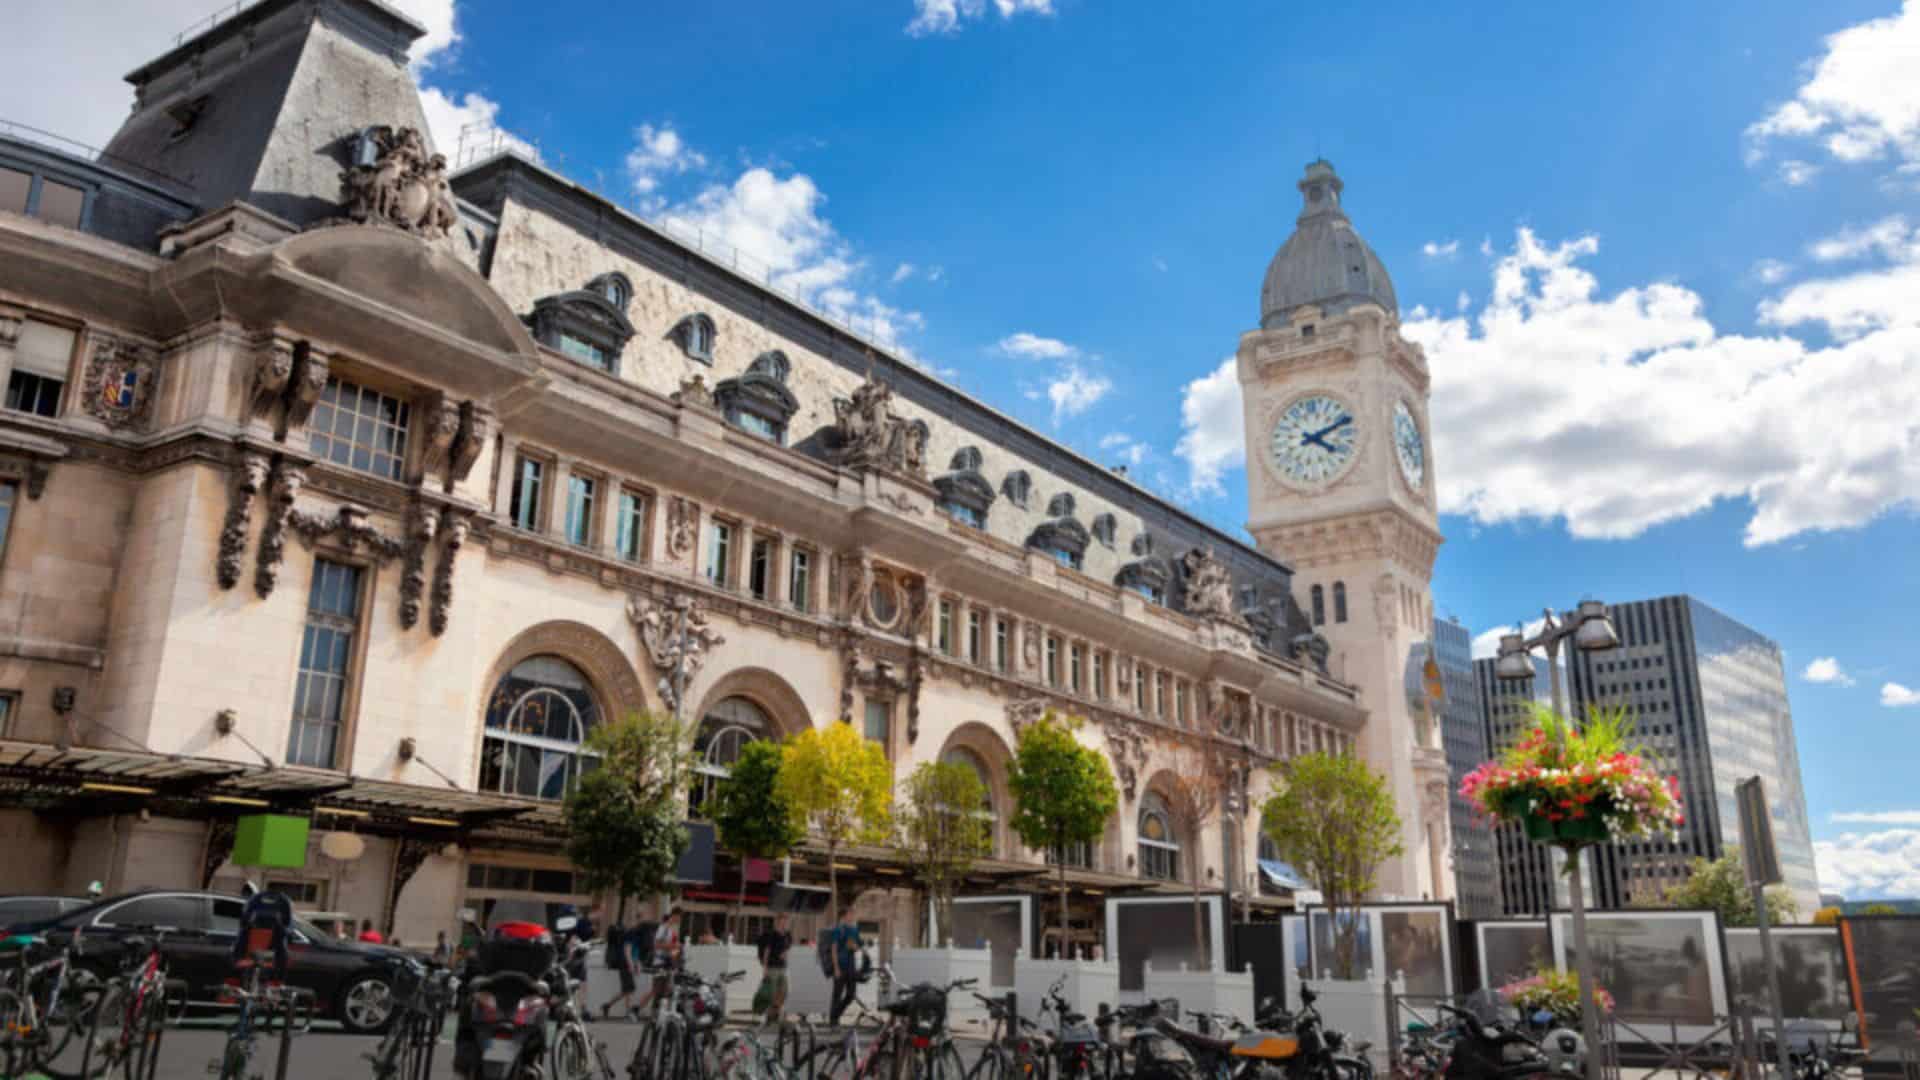 Paris Gare de Lyon : un homme nu envoie ses excréments sur les passants